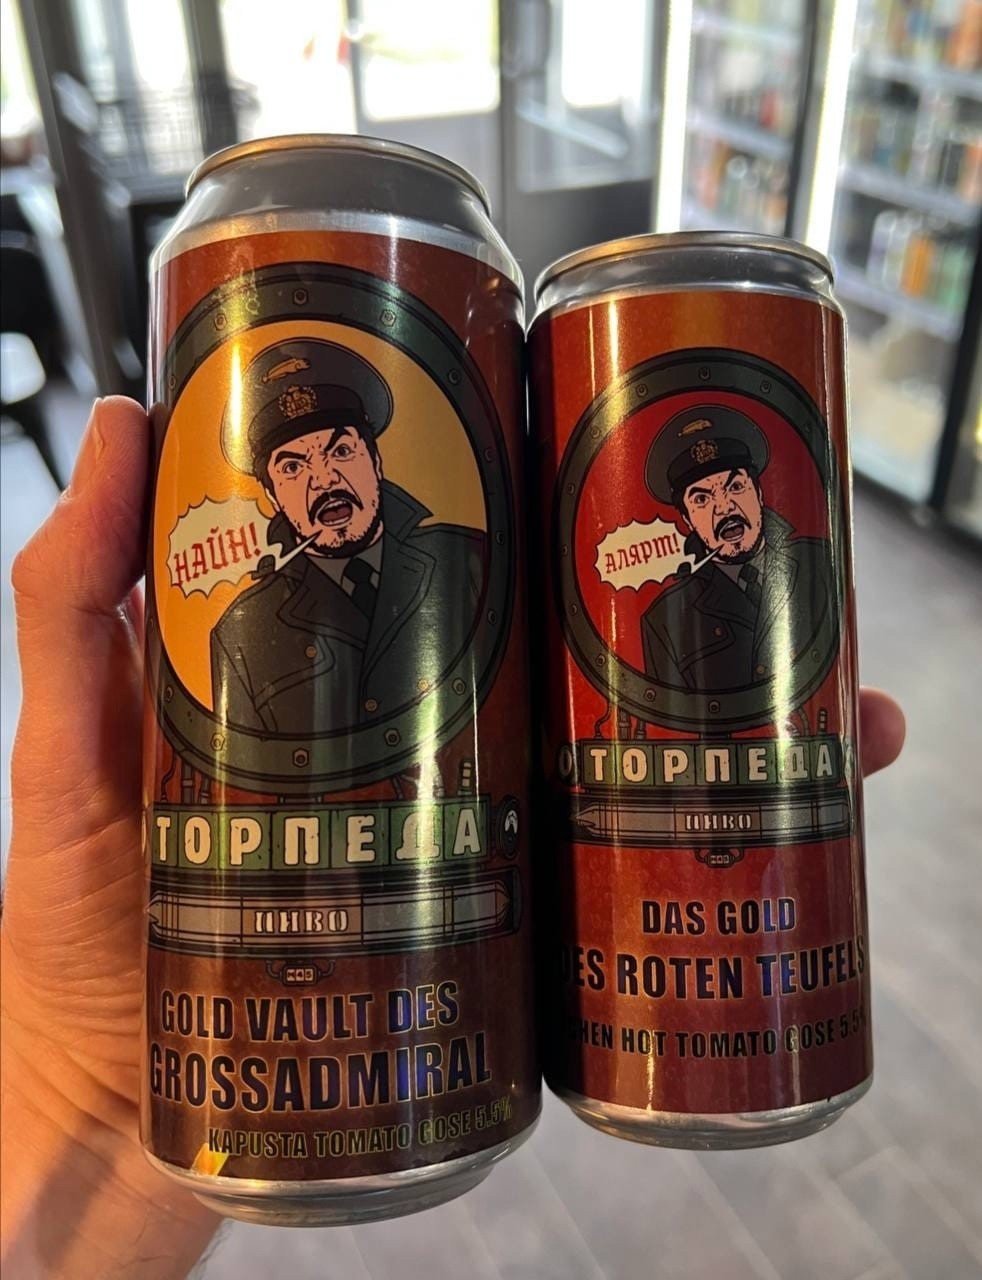 Мэддисон выпустил новое пиво в Москве поклонники горят от его вкуса